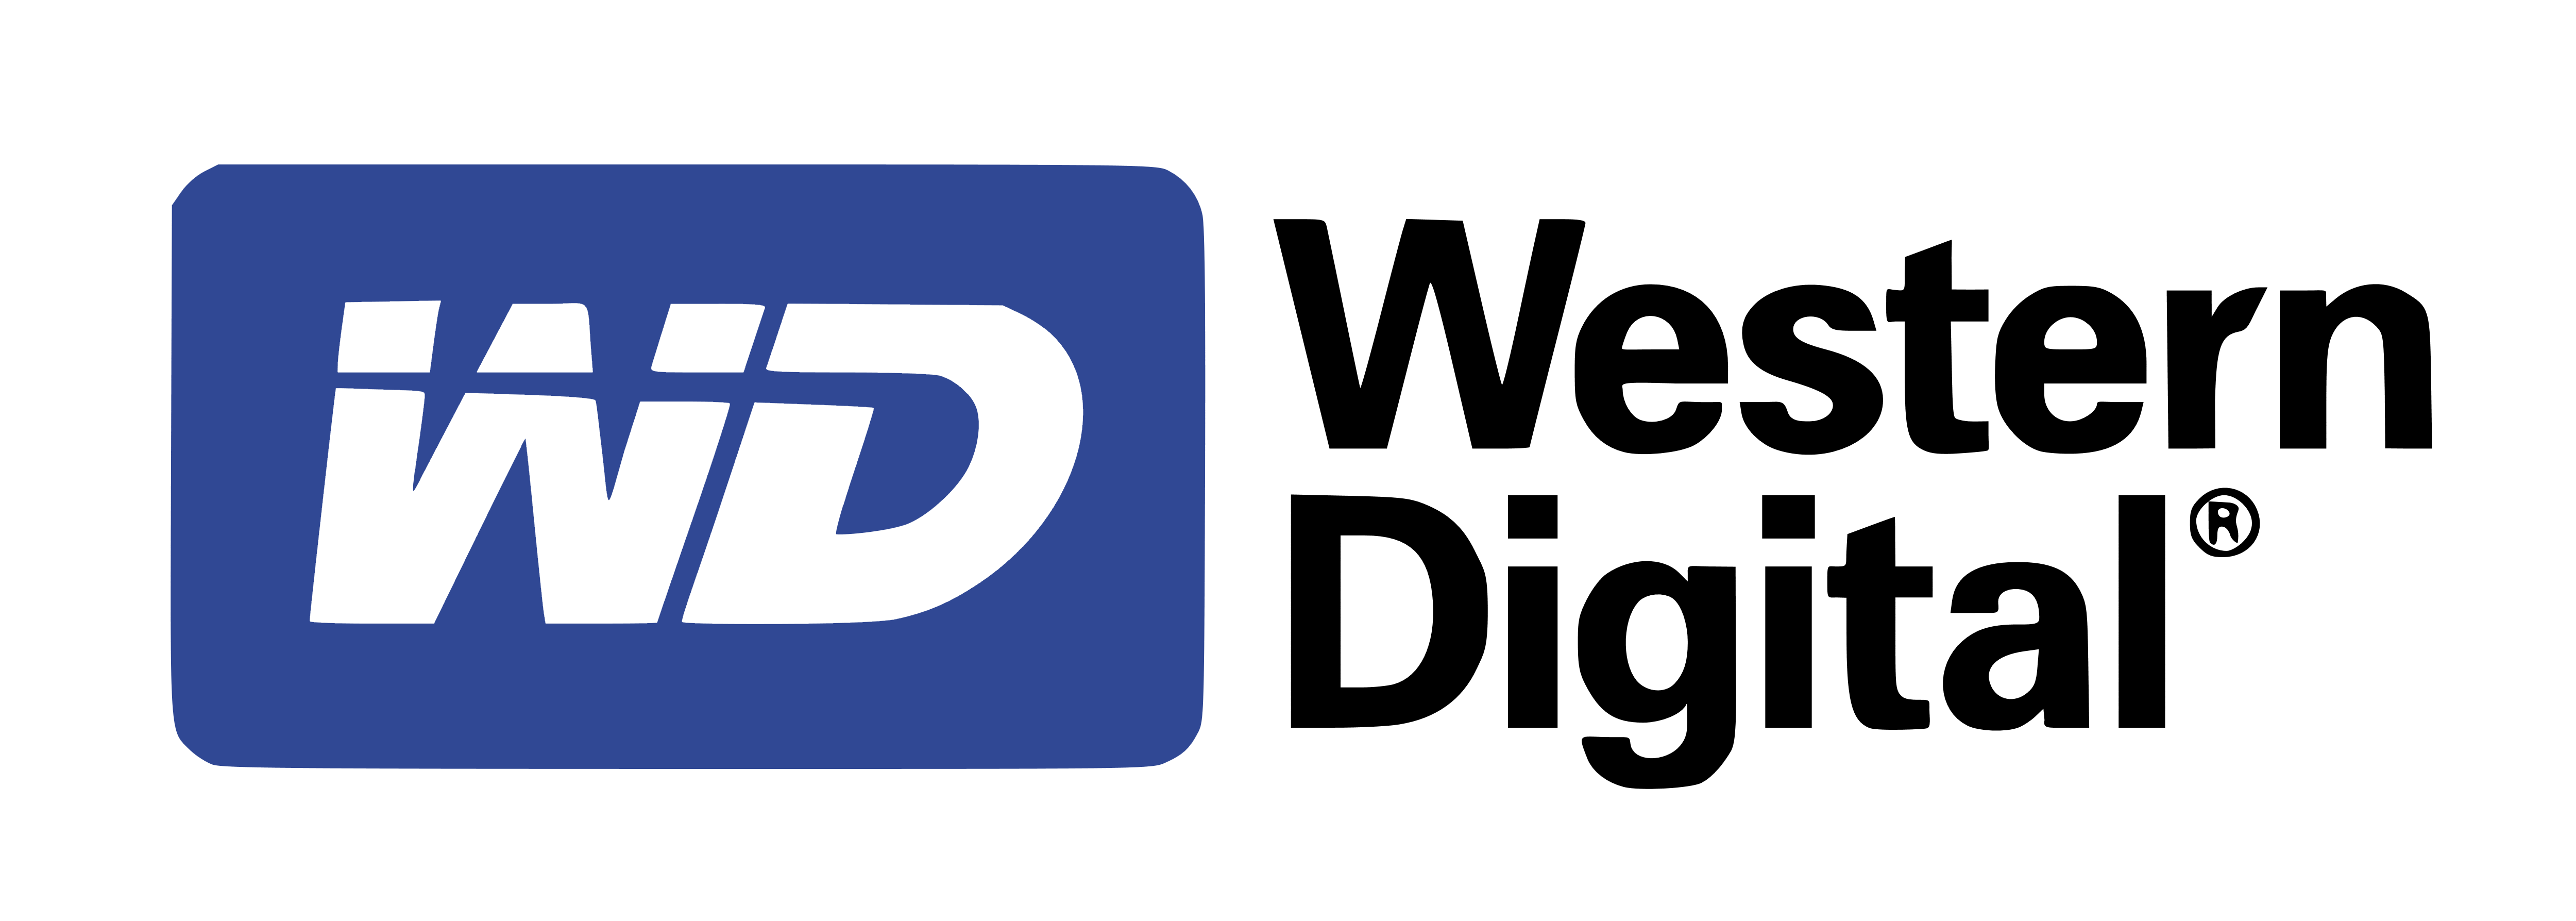 Western Digital – Logos Download, Western Digital Logo PNG - Free PNG